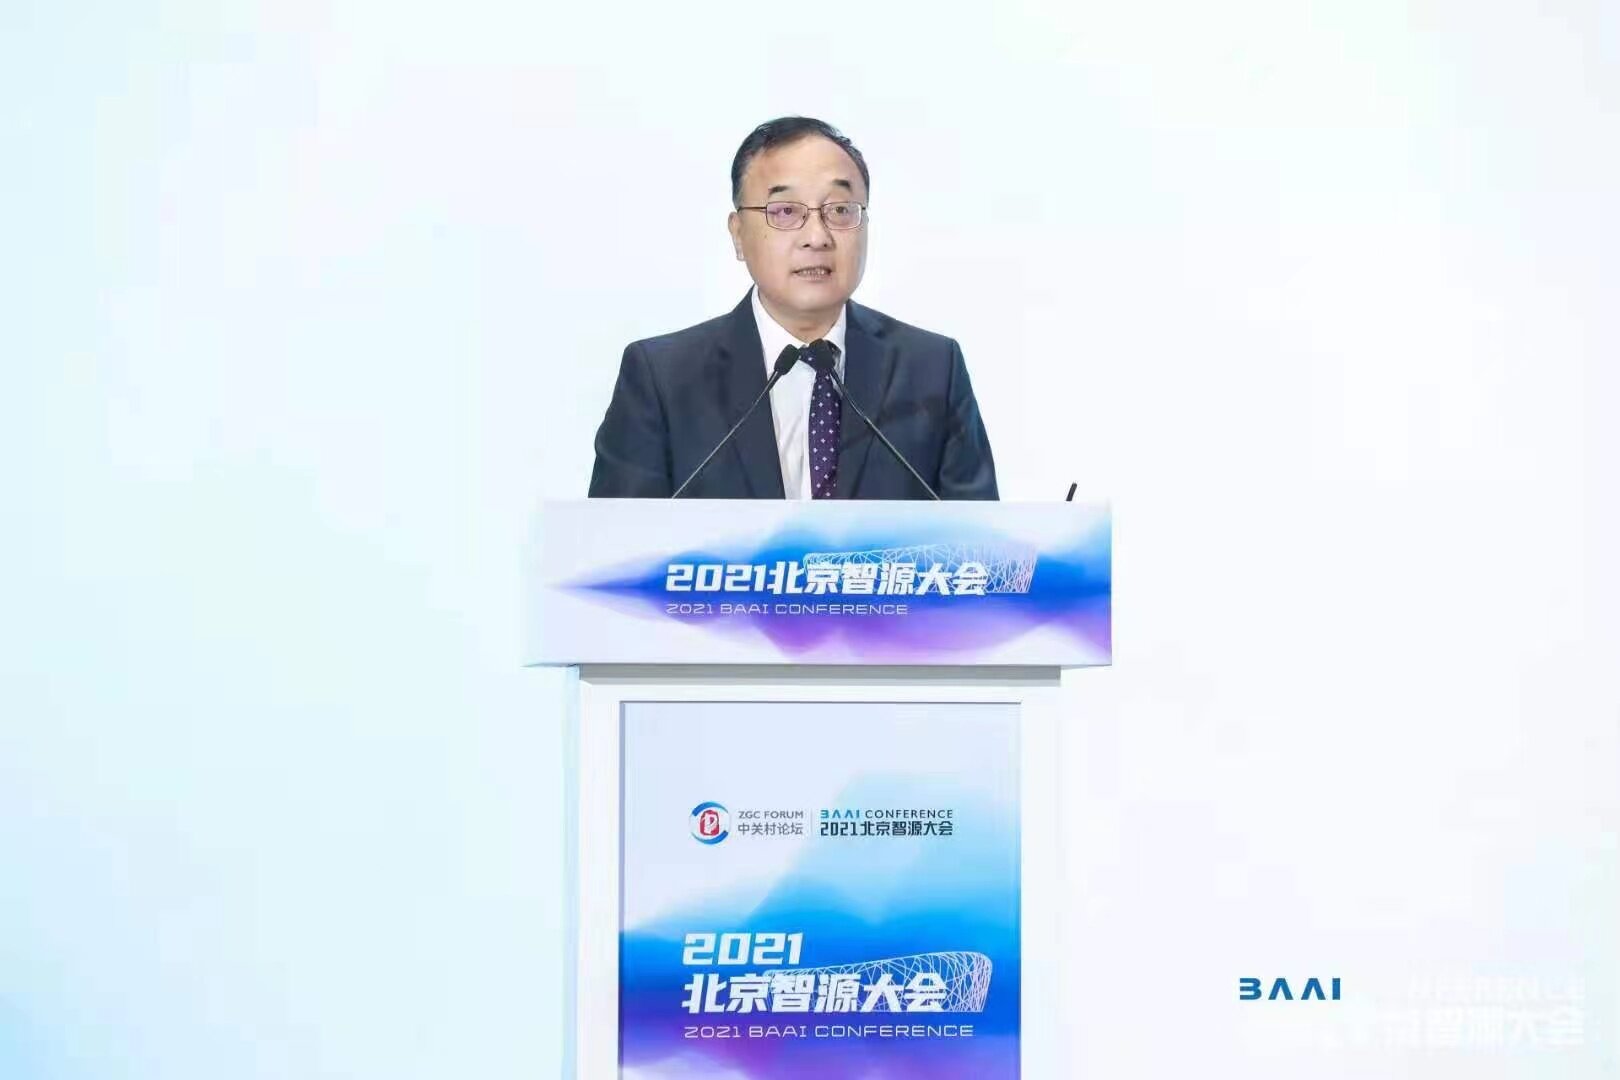 科技部战略规划司司长许倞：北京是人工智能的重要创新高地丨智源大会